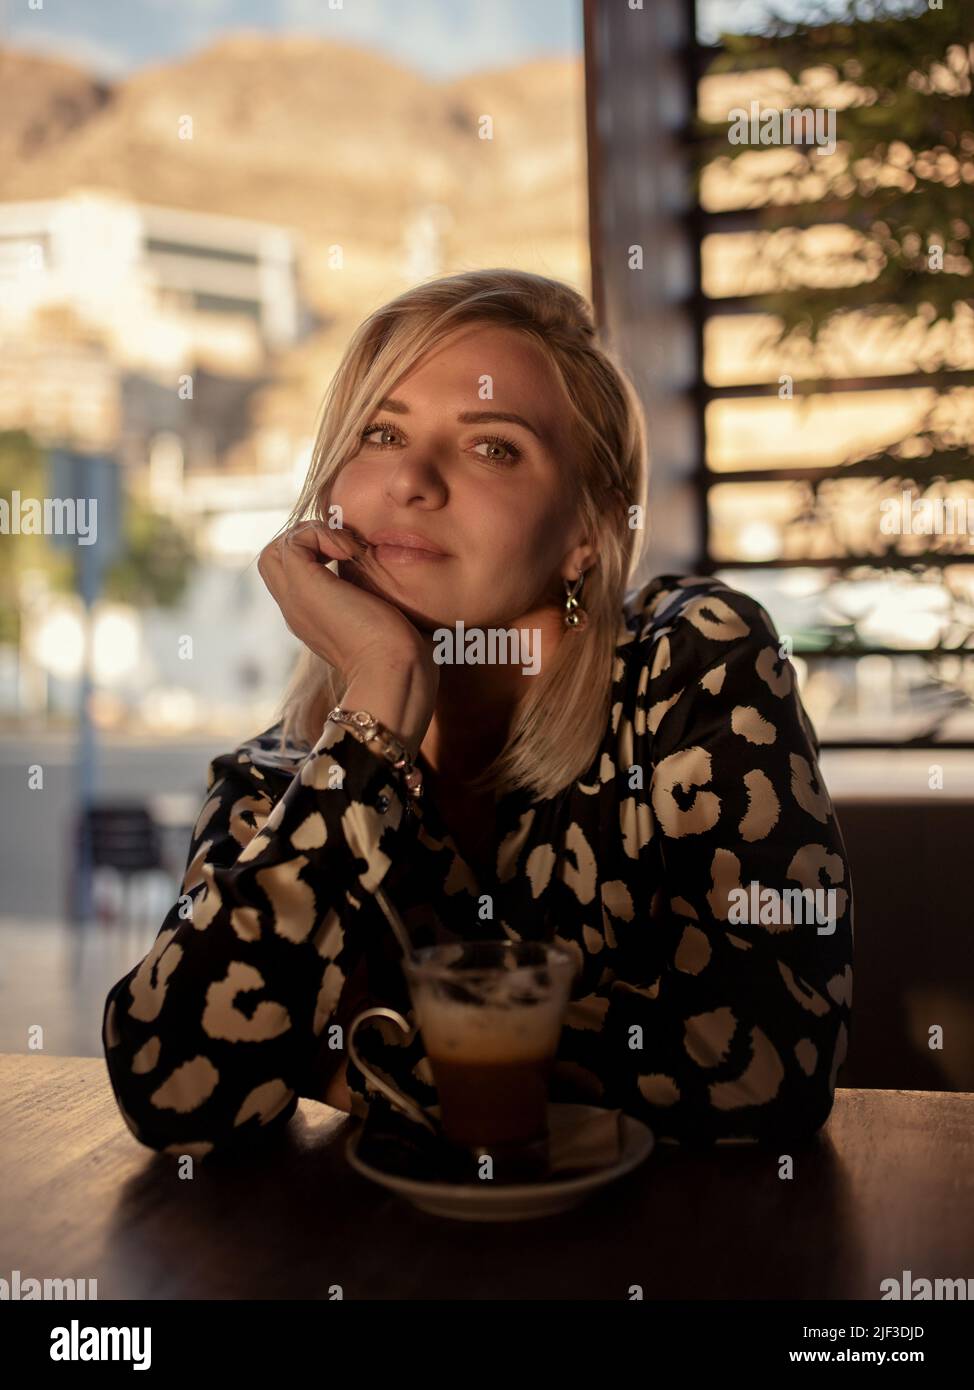 La signora attraente gode di una tazza di caffè nella caffetteria. Foto Stock